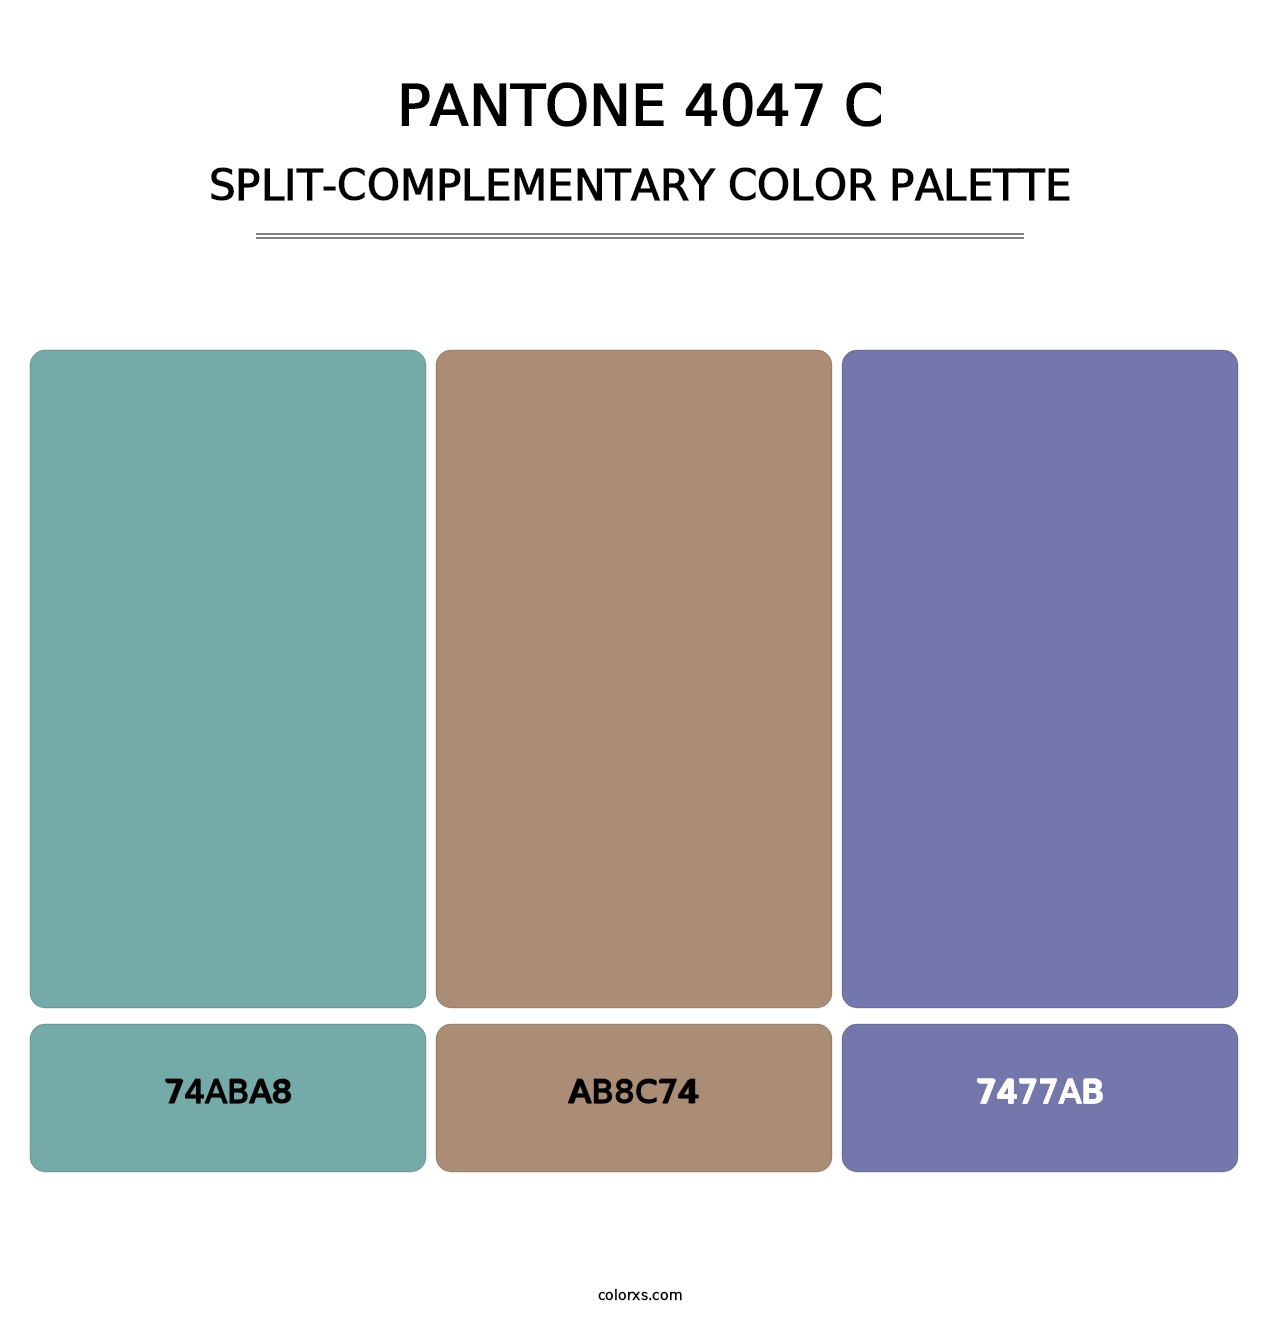 PANTONE 4047 C - Split-Complementary Color Palette